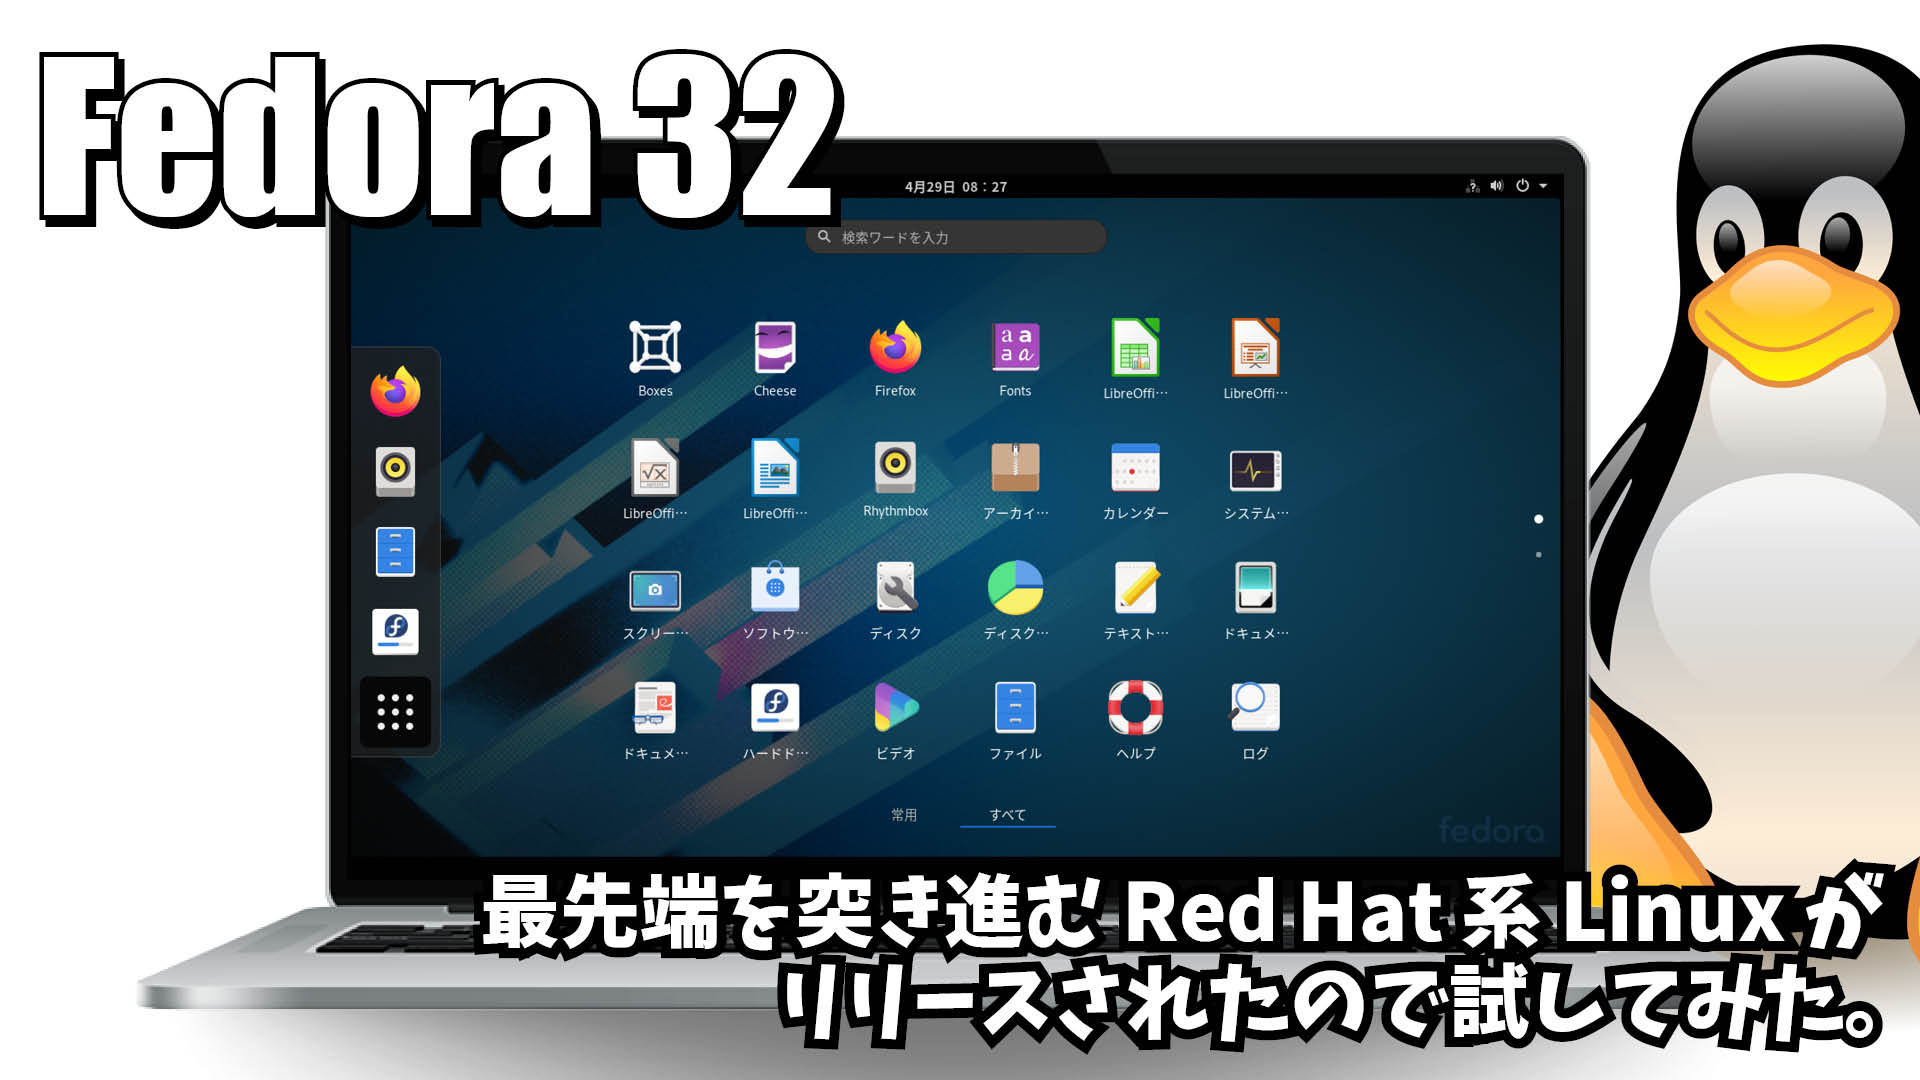 Fedora 32: 最先端を突き進む Red Hat 系 Linux ディストリビューションがリリースされたので試してみた。